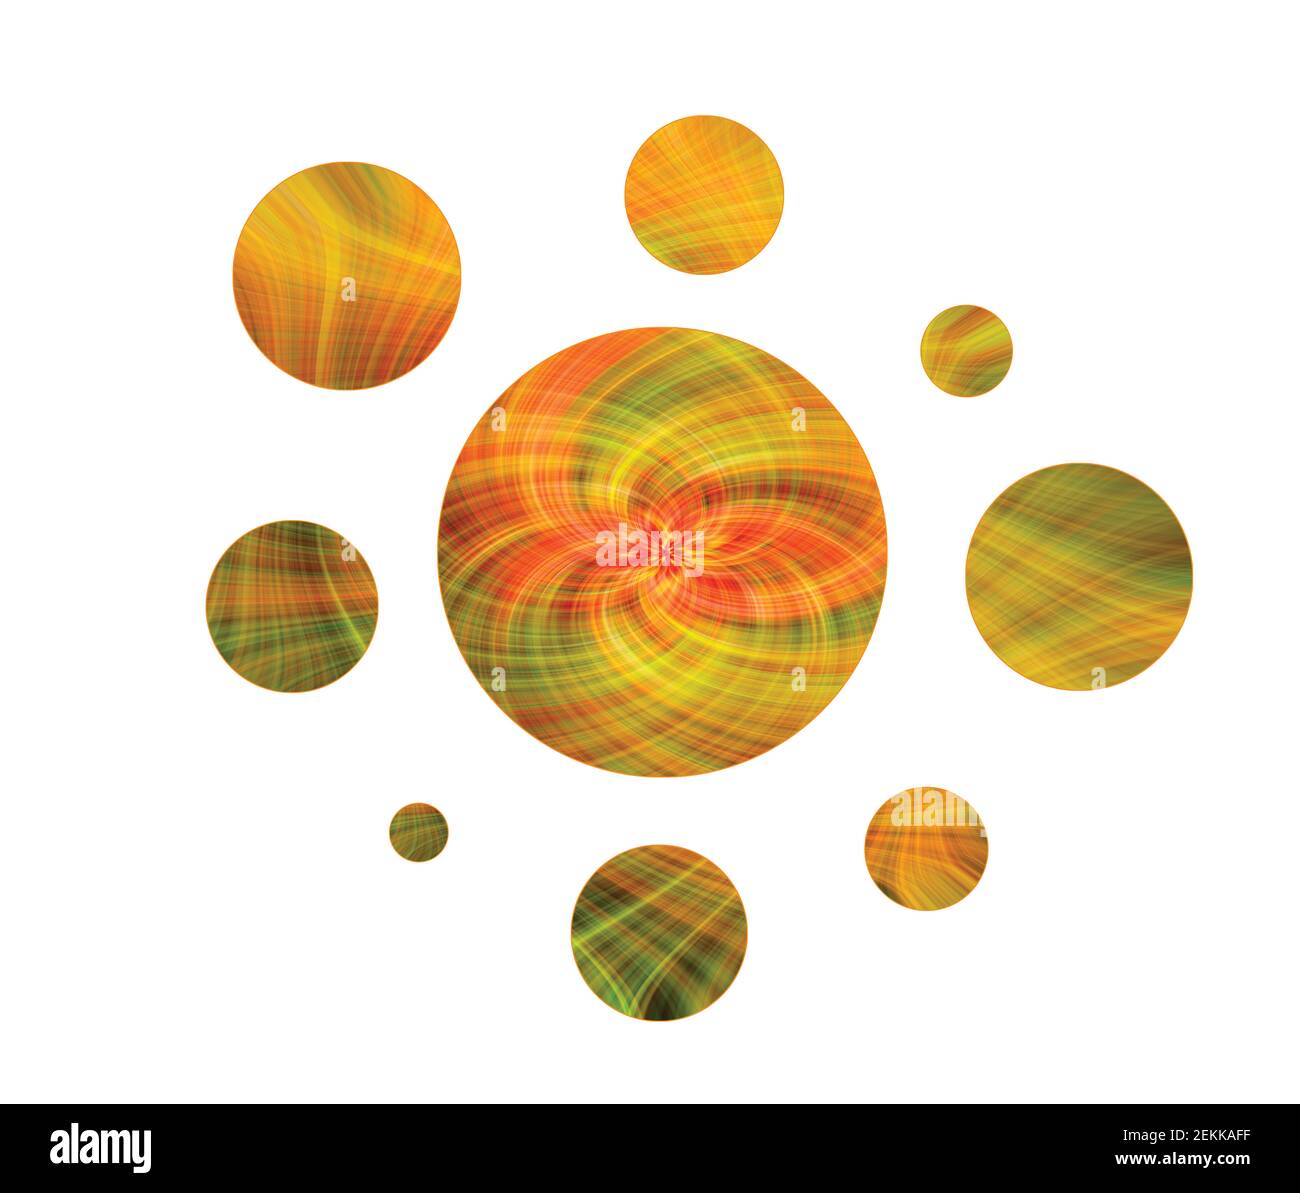 Konzept Design von Erdfarben auf Planeten. Umkreisen eines zentralen 'Erde' Planeten. Stockfoto